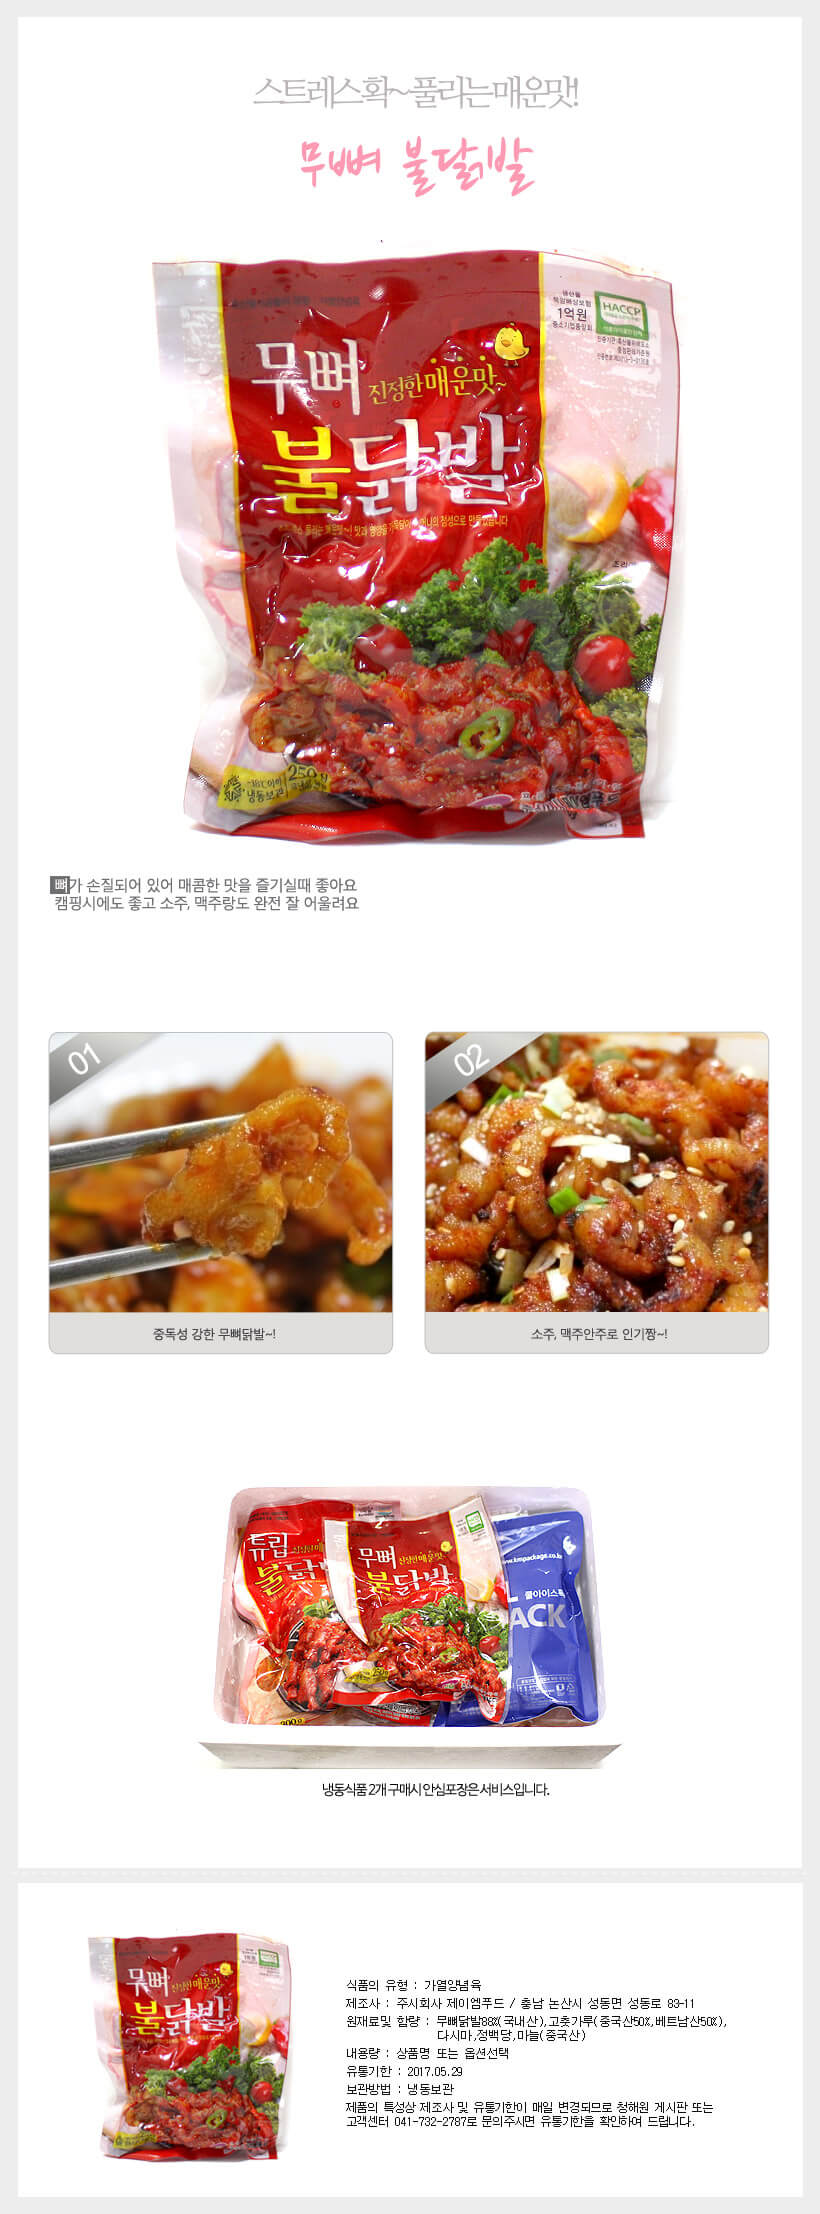 韓國食品-[제이엠] 무뼈불닭발 230g